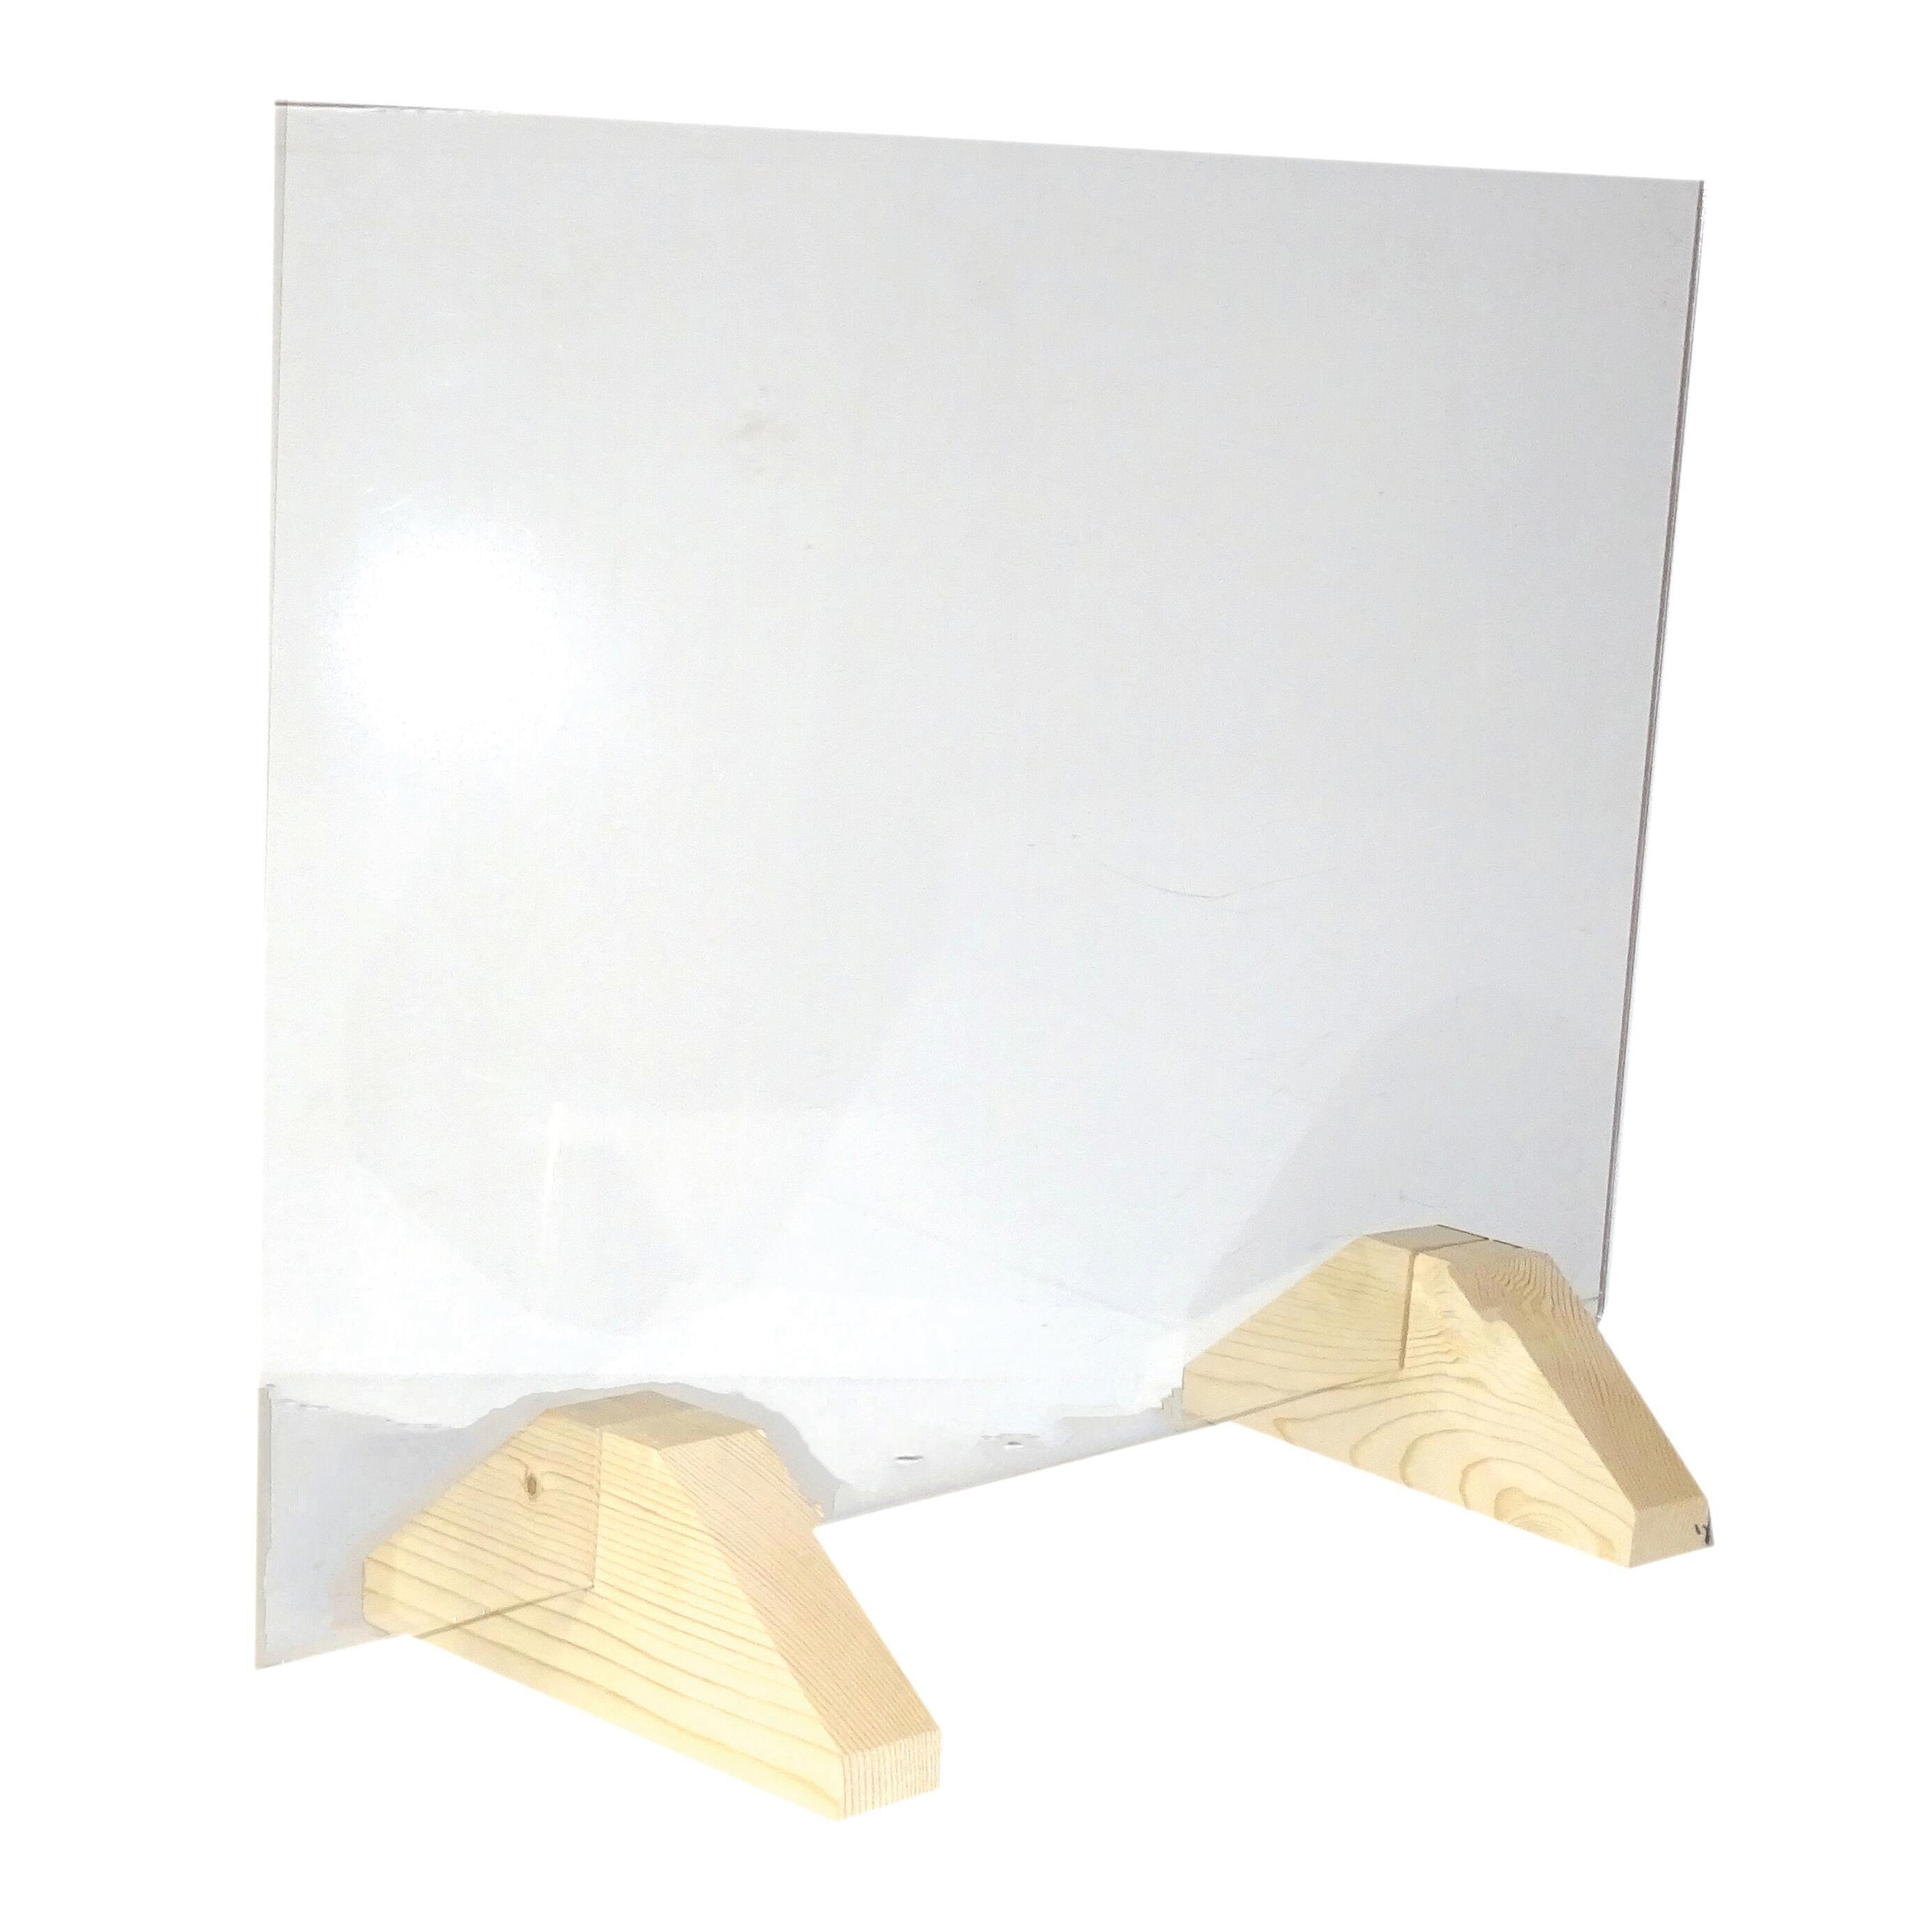 Schermo di protezione vetro trasparente 80 cm x 56 cm, Sp 5 mm - 1